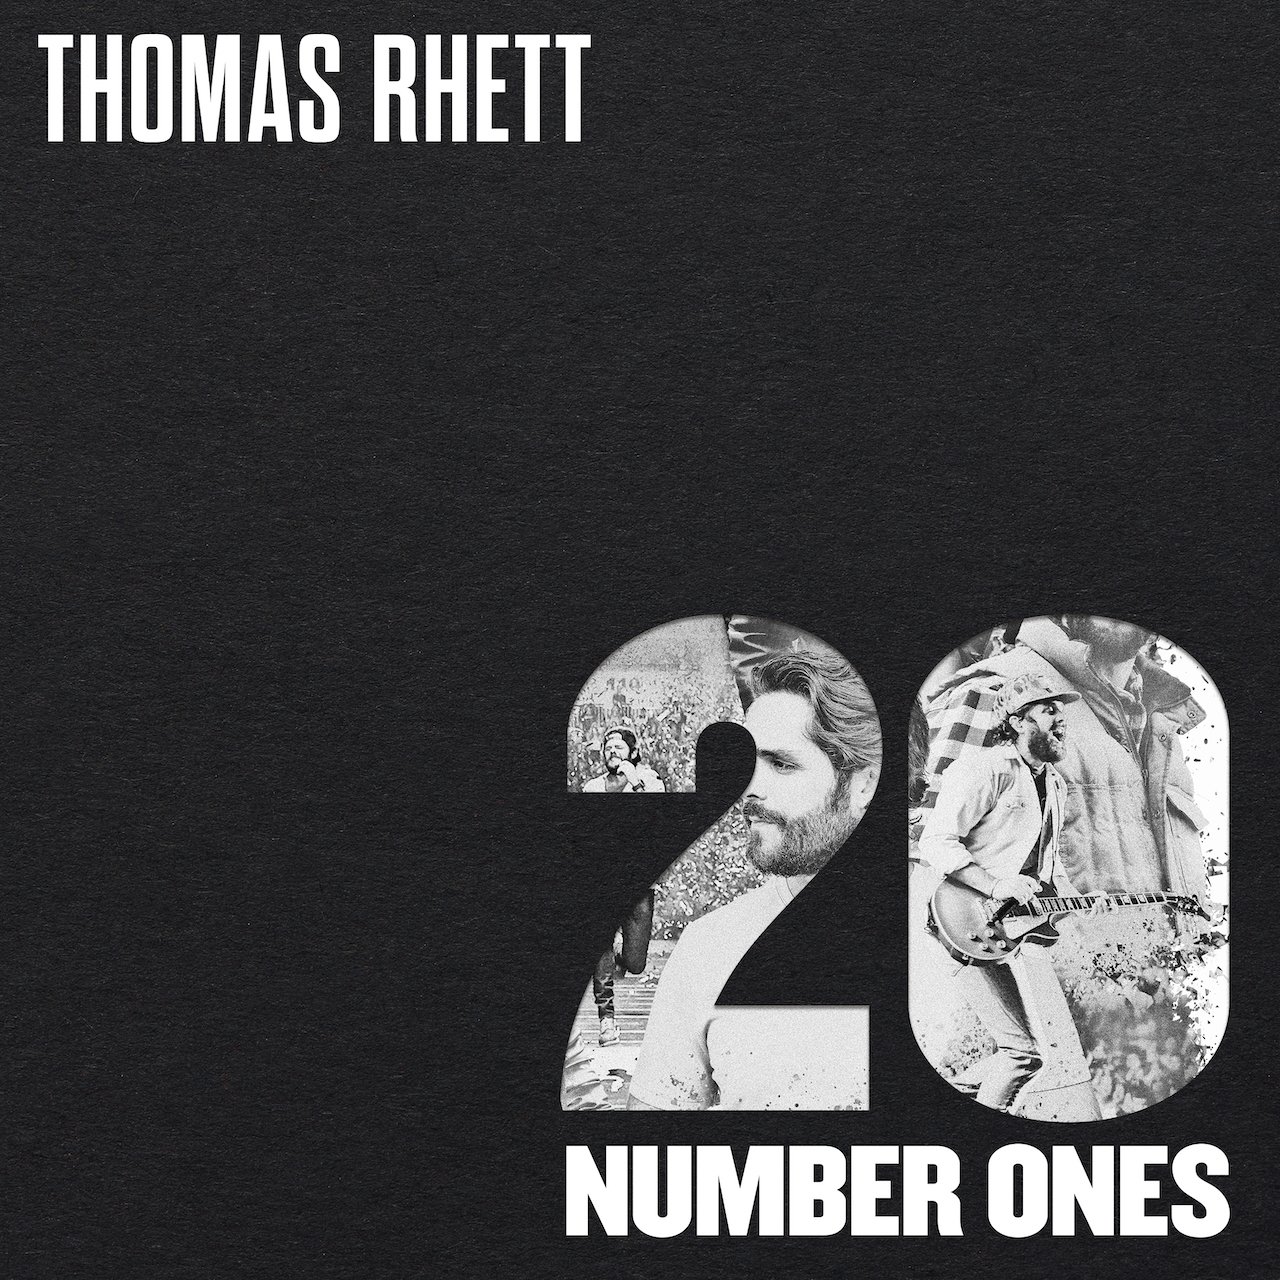 Thomas Rhett Celebrates Twenty Number Ones With Vinyl Collection